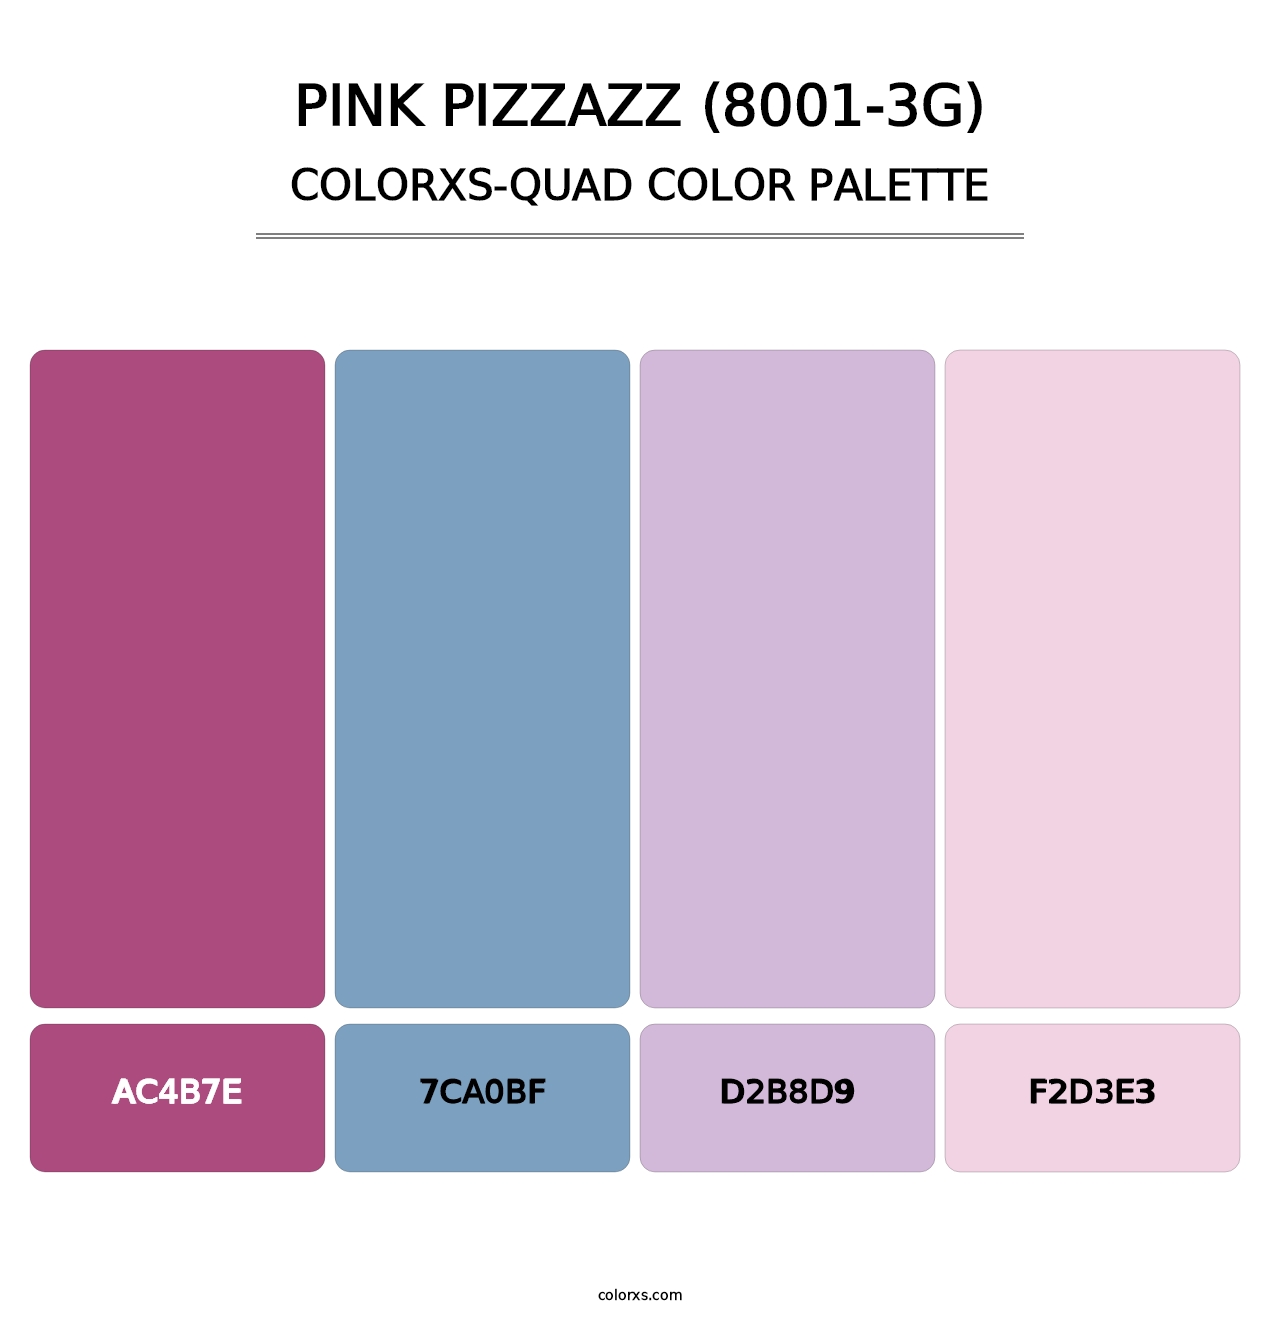 Pink Pizzazz (8001-3G) - Colorxs Quad Palette